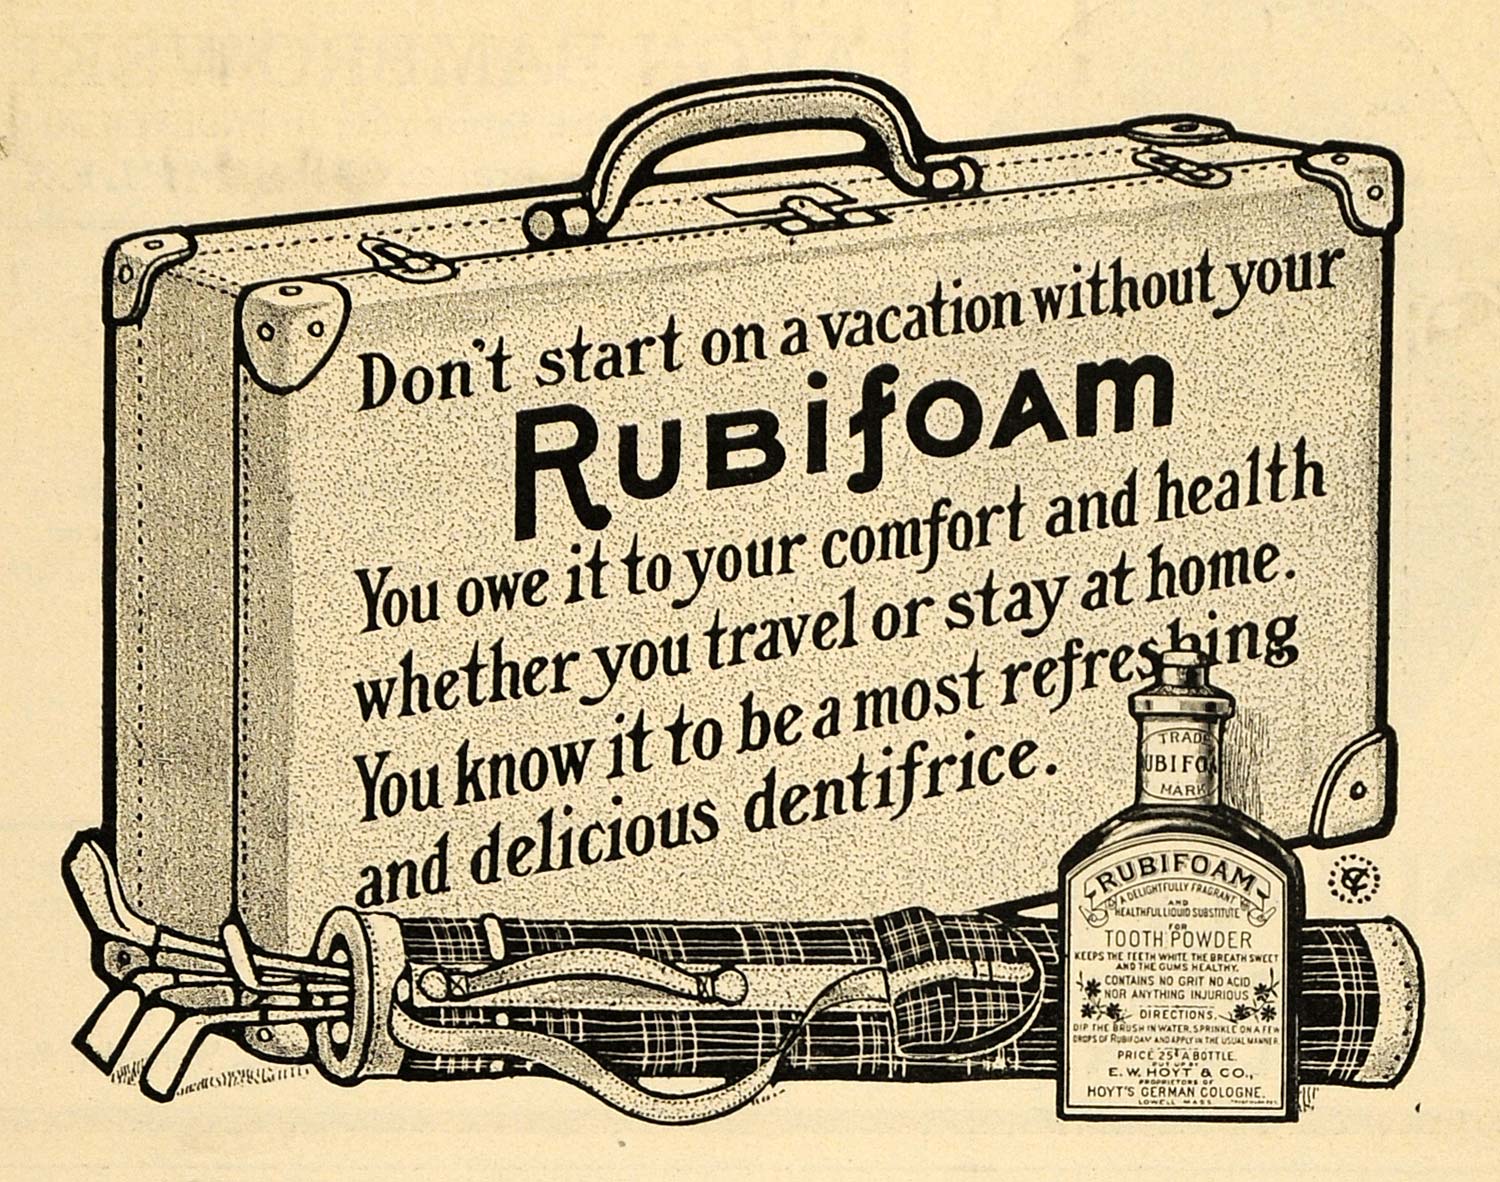 1902 Ad E W Hoyt & Co. Rubifoam Tooth Powder Dentifrice - ORIGINAL TOM3